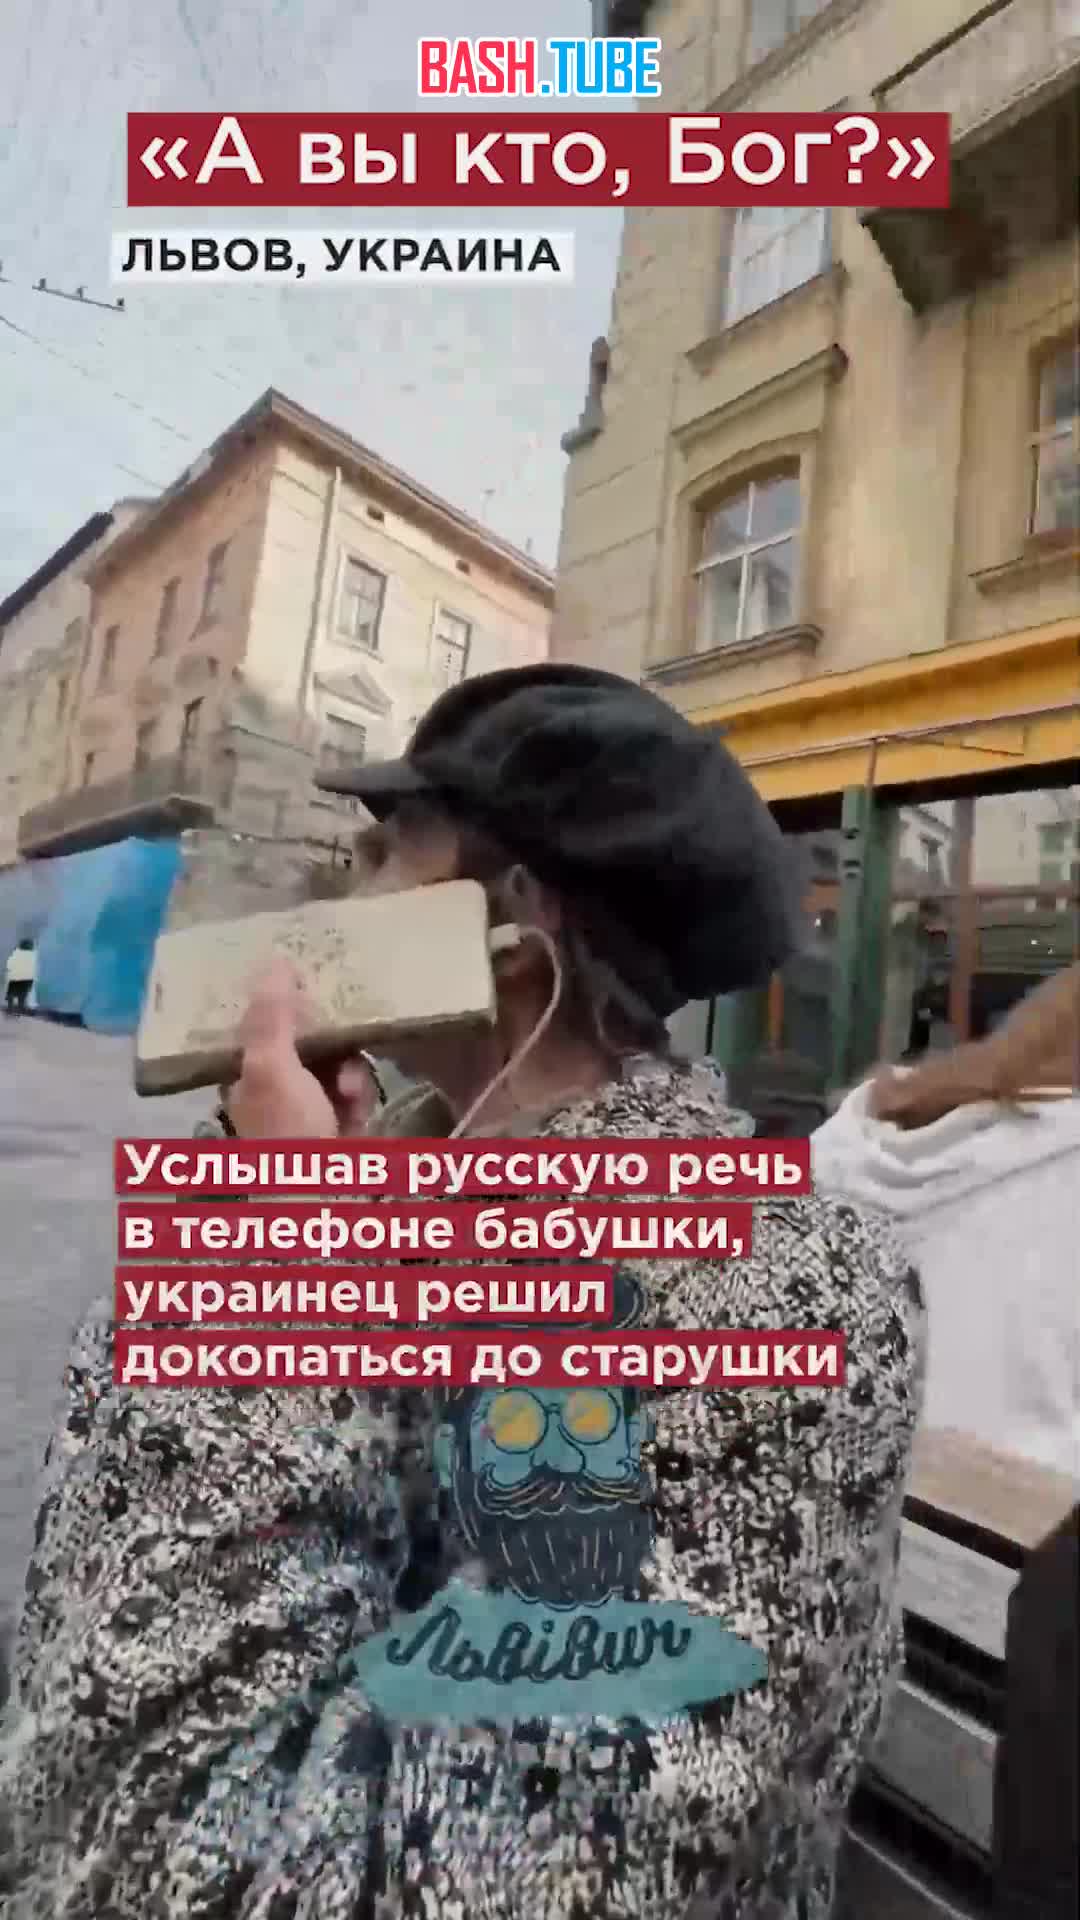  Ещё одна бабушка дала отпор украинскому националисту: «Вы кто, Бог?»